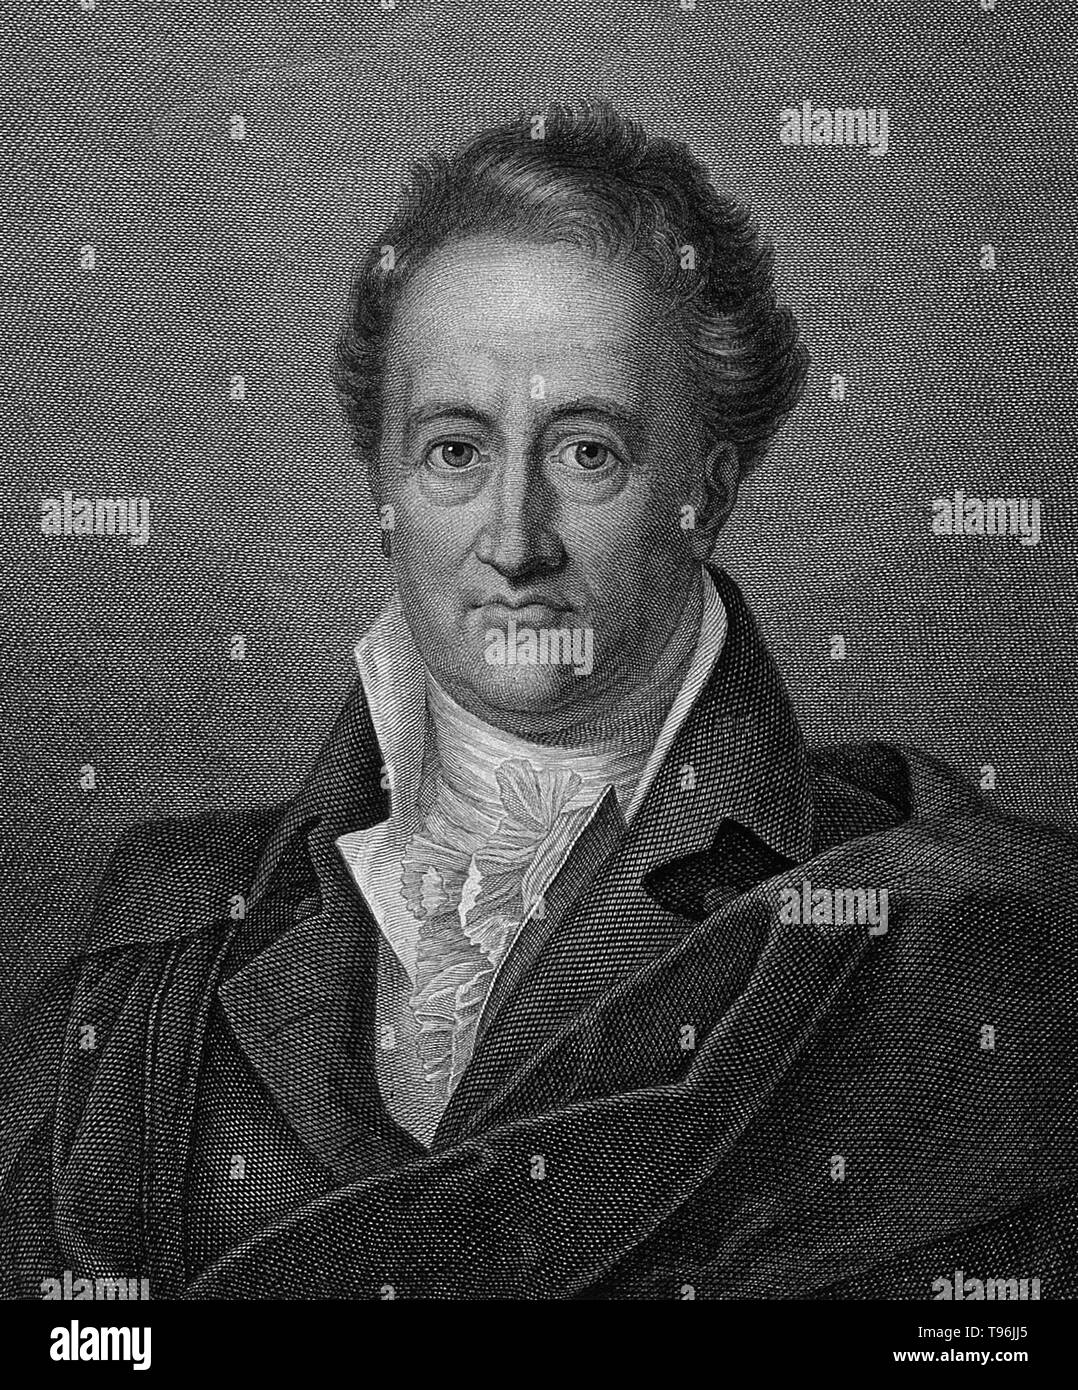 Johann Wolfgang von Goethe (Août 28, 1749 - Mars 22, 1832) était un écrivain allemand, artiste pictural, biologiste, homme d'État, physicien théorique, et polymathe. Il est considéré comme le génie suprême de littérature allemande moderne. Ses œuvres couvrent les domaines de la poésie, théâtre, prose, la philosophie et les sciences. Son Faust a été appelé l'une des plus grandes œuvres dramatiques de la littérature européenne moderne. Banque D'Images